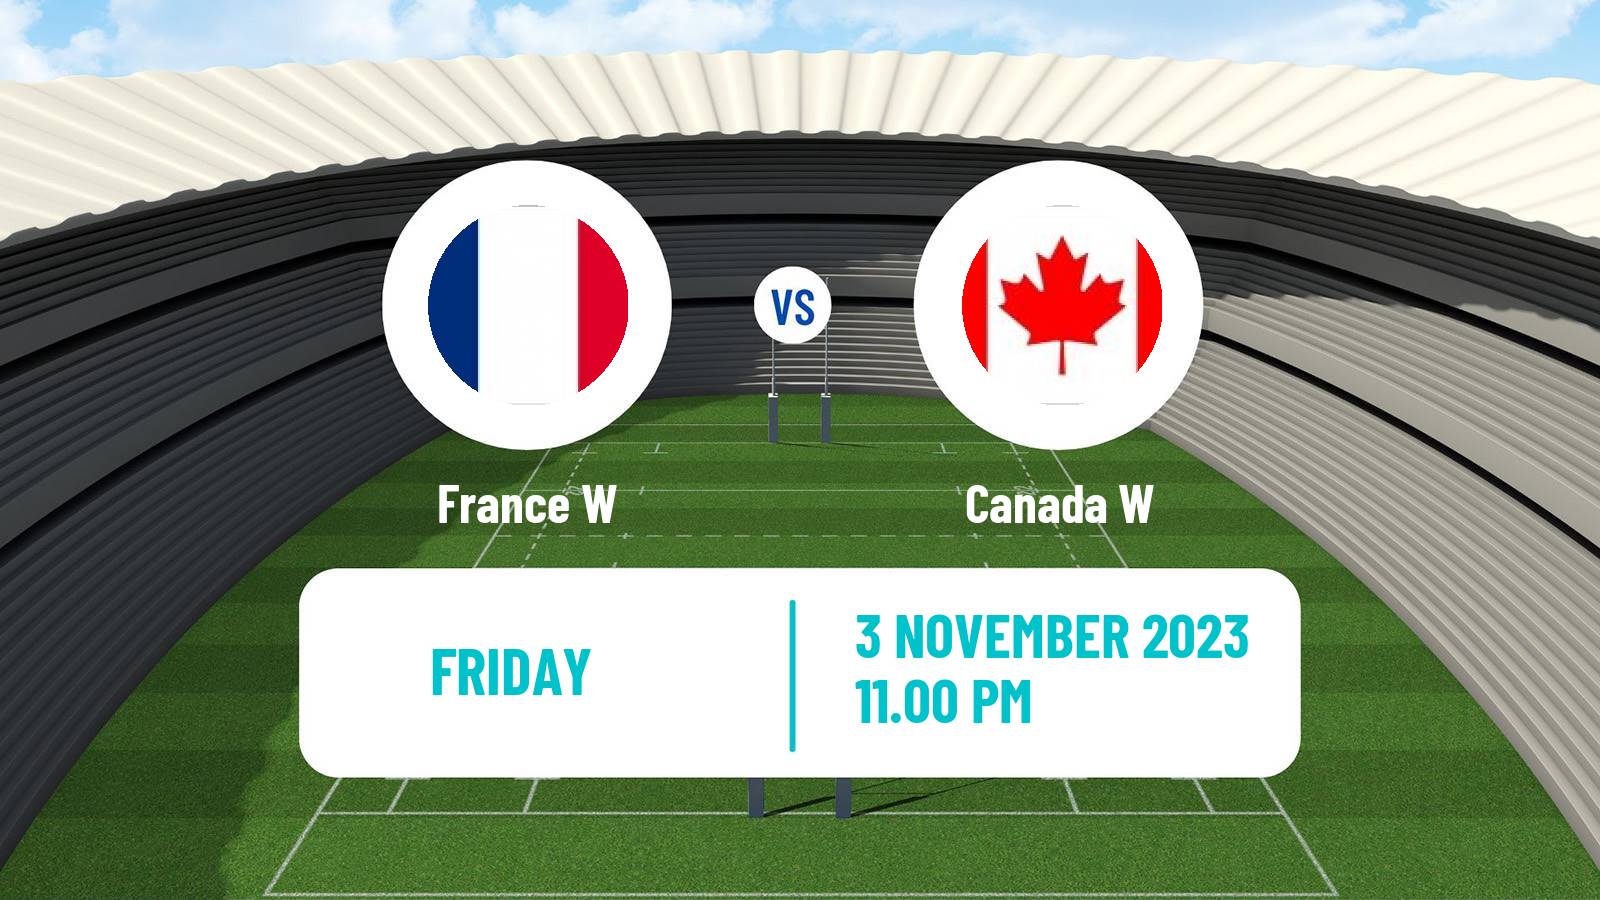 Rugby union WXV 1 Rugby Women France W - Canada W